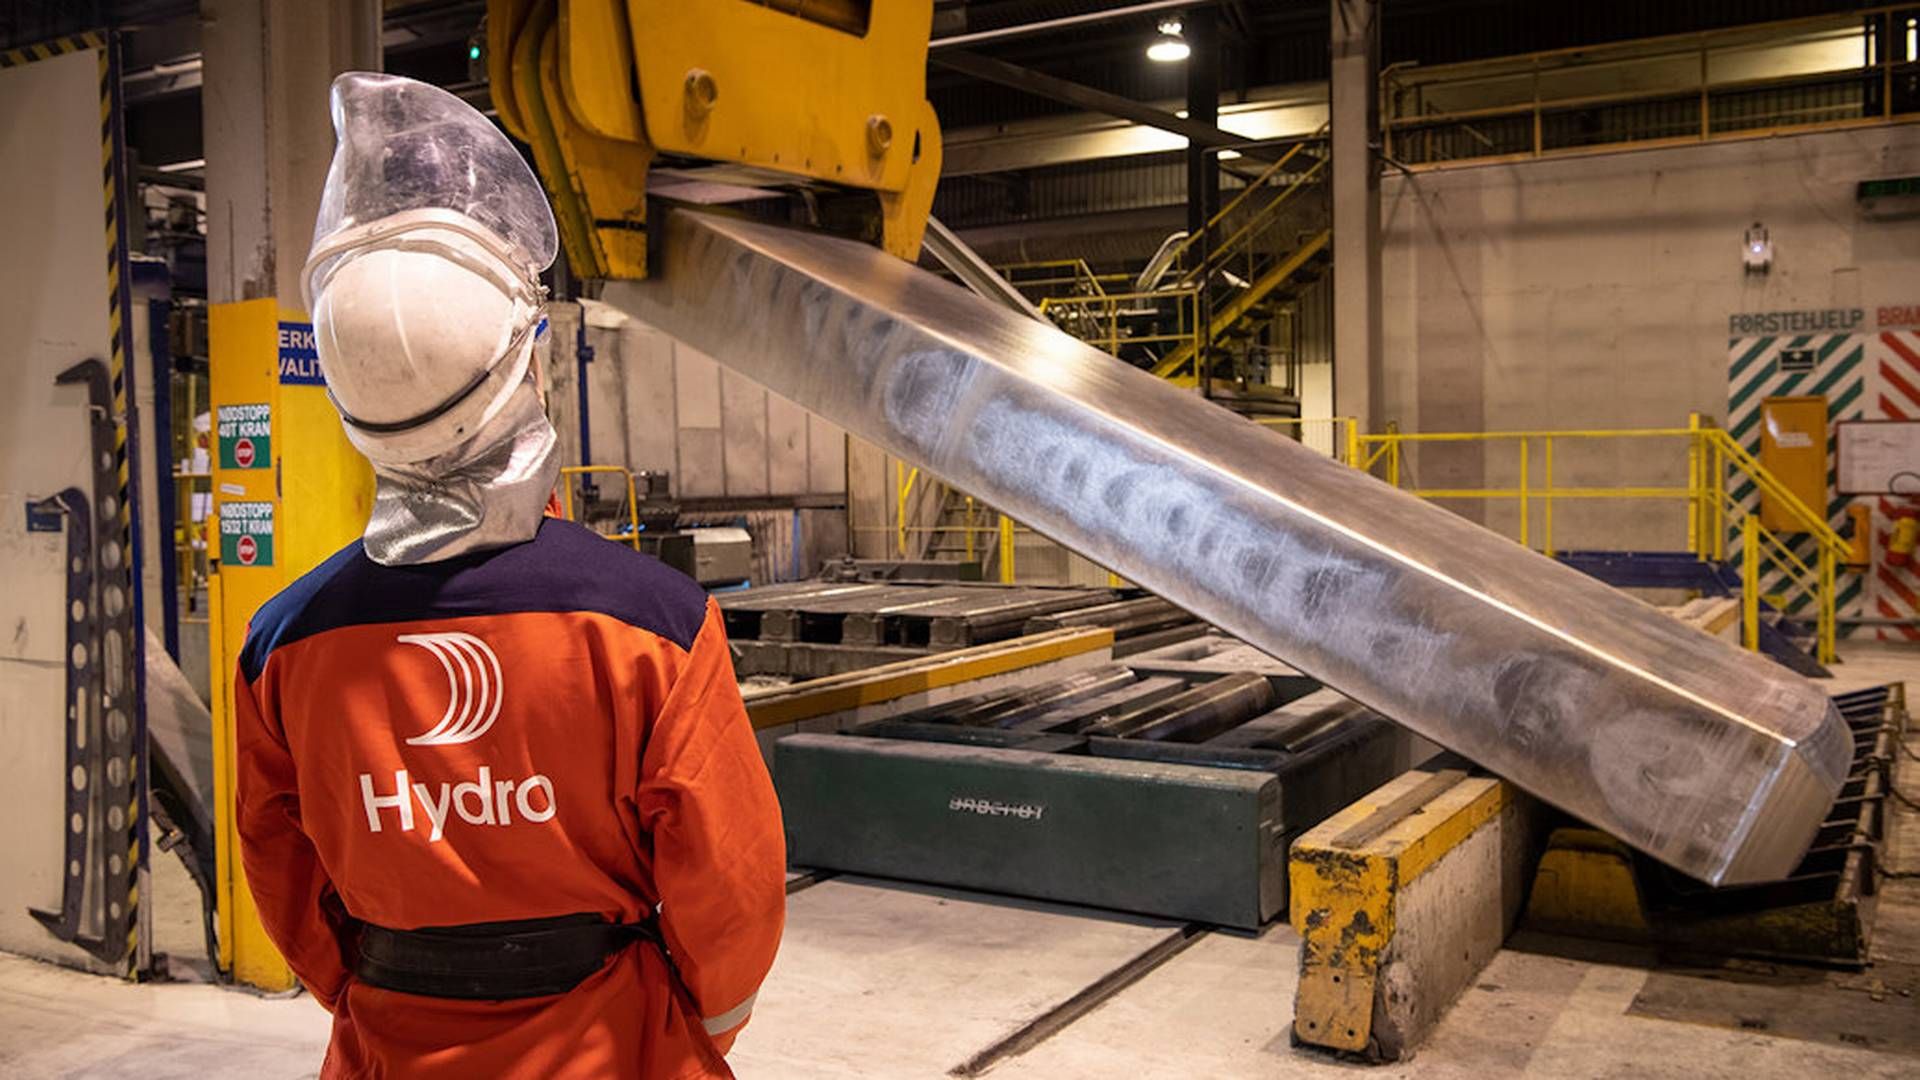 MOTSTAND: Hydro sier det nye prosjektene vil gi kraft til deres fabrikk i Høyanger, og annen industri i området. Nå møter satsingen motstand fra grunneiere. | Foto: Halvor Molland/Hydro